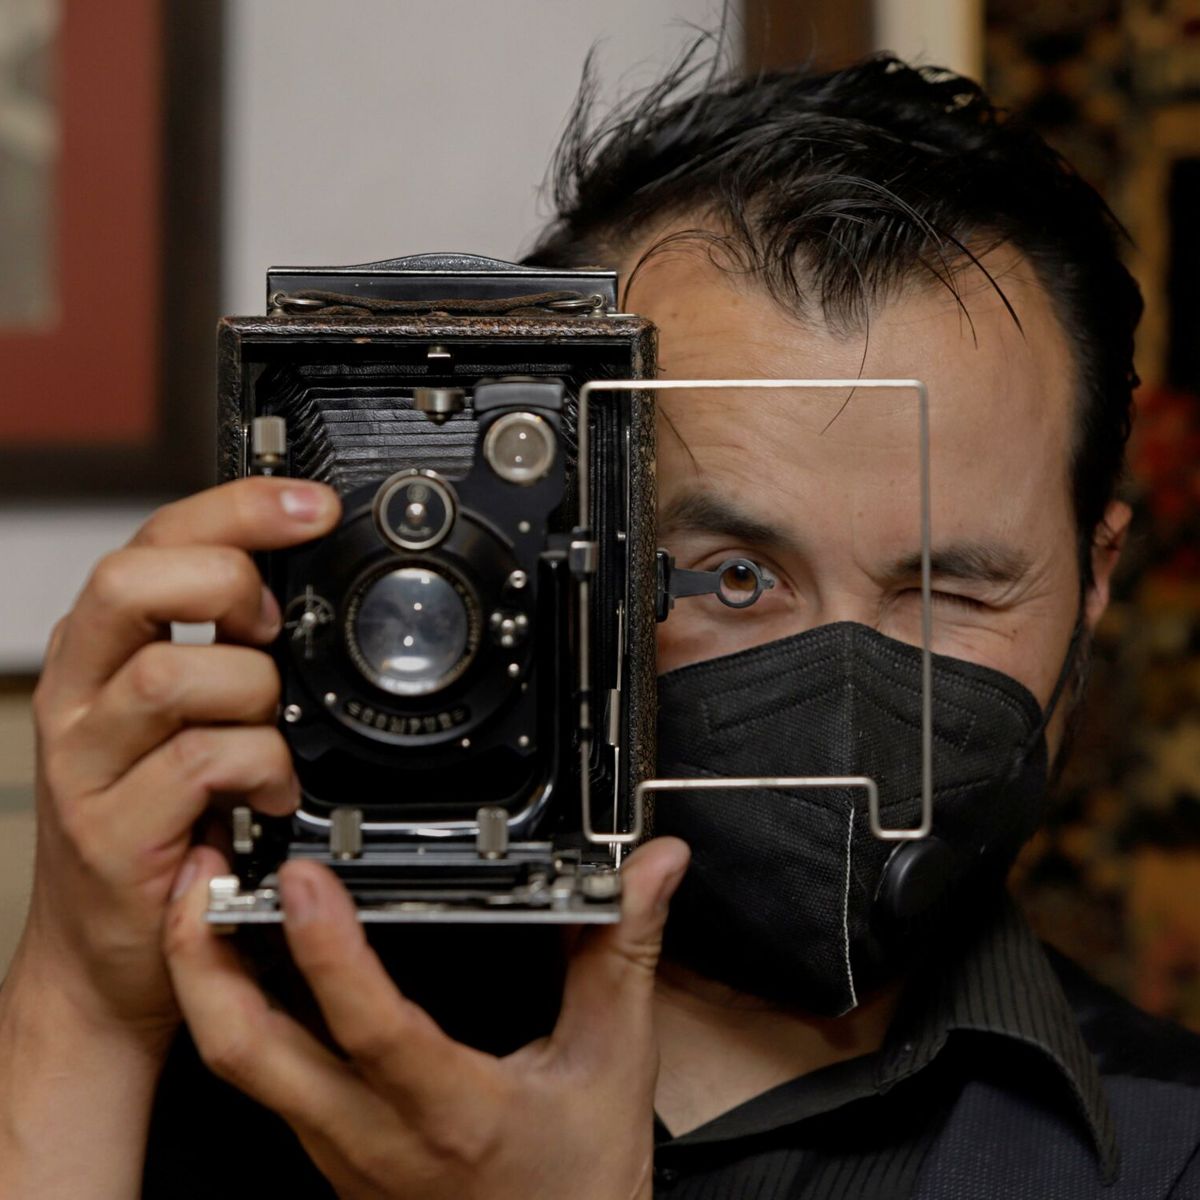 El regreso de la fotografía analógica, cámaras con nostalgia al pasado -  Revista Diners